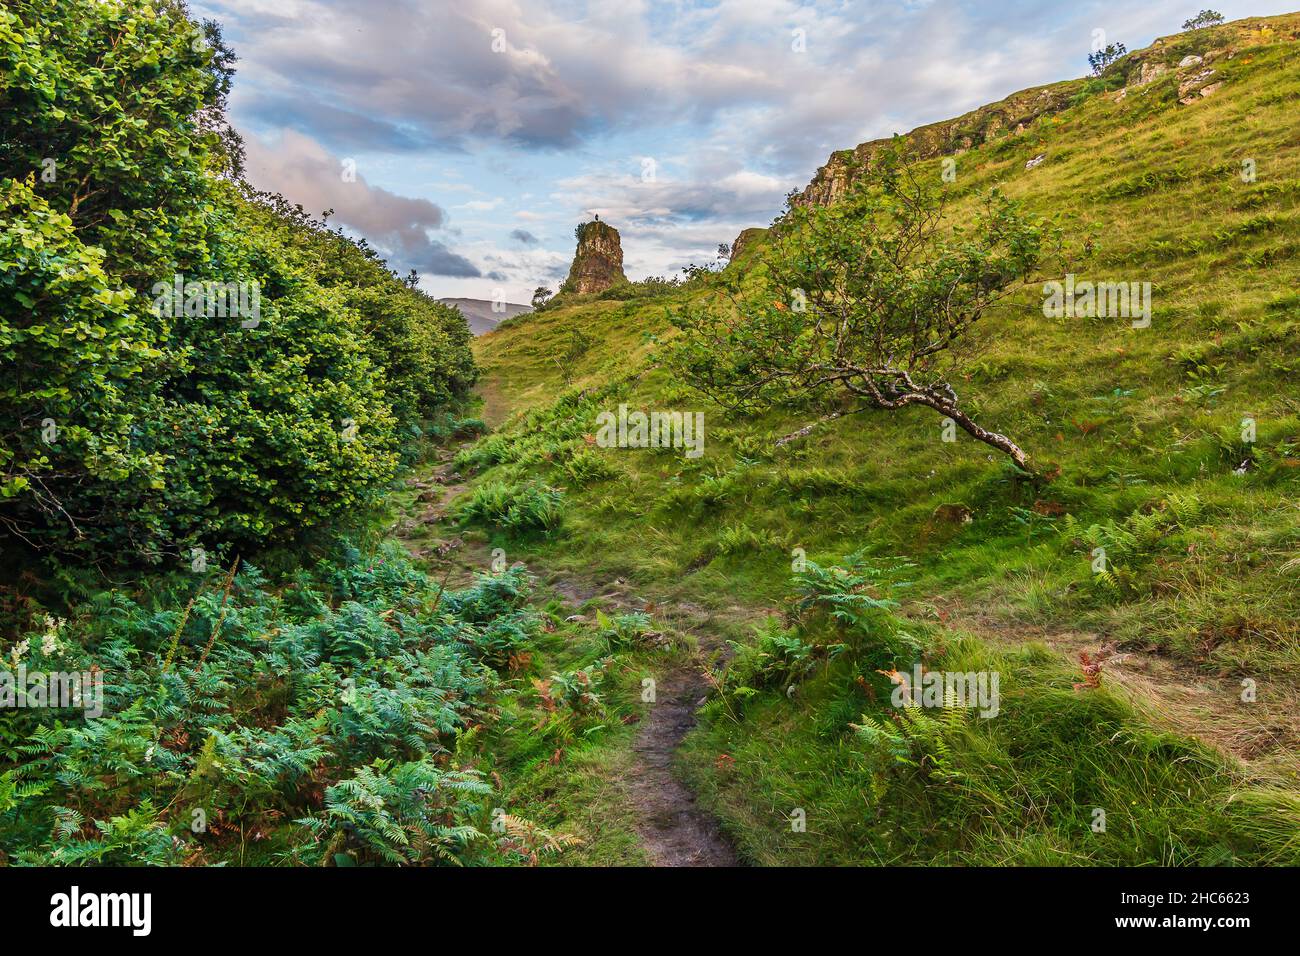 Landschaft mit Pfad, der zu einem Hügel auf der Isle of Skye in Schottland führt. Bäume und Sträucher mit Farnen. Wolken am Himmel im Sommer. Grüne Wiese auf der Th Stockfoto